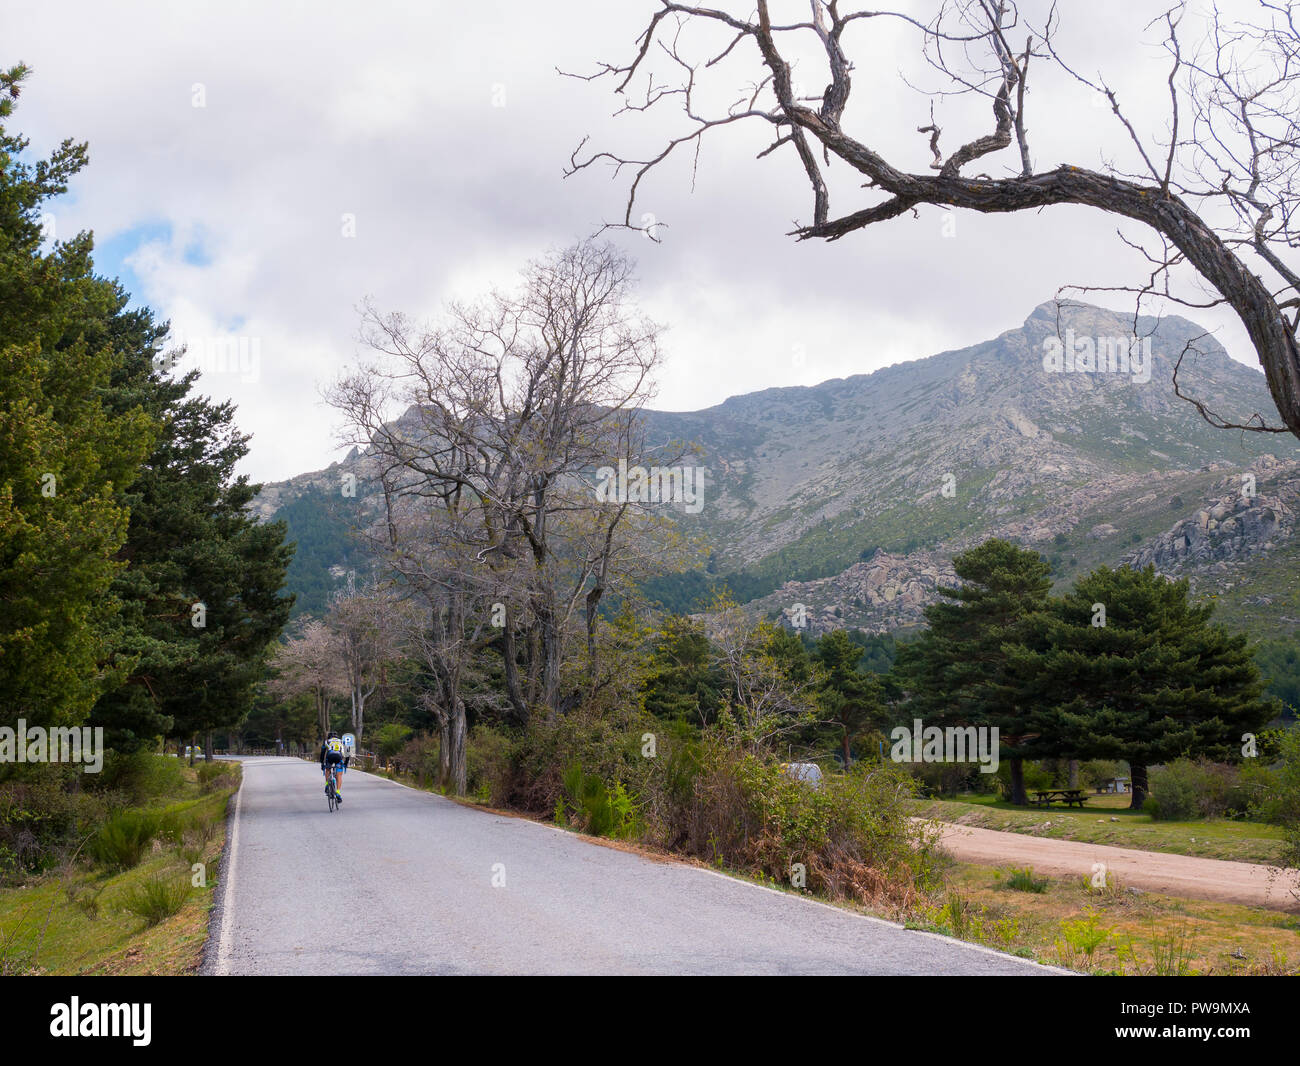 Ciclista y pico de La Maliciosa. Valle de la Barranca en la Sierra de Guadarrama y dentro del 'Parque regional de la cuenca alta del Manzanares' (rese Stock Photo